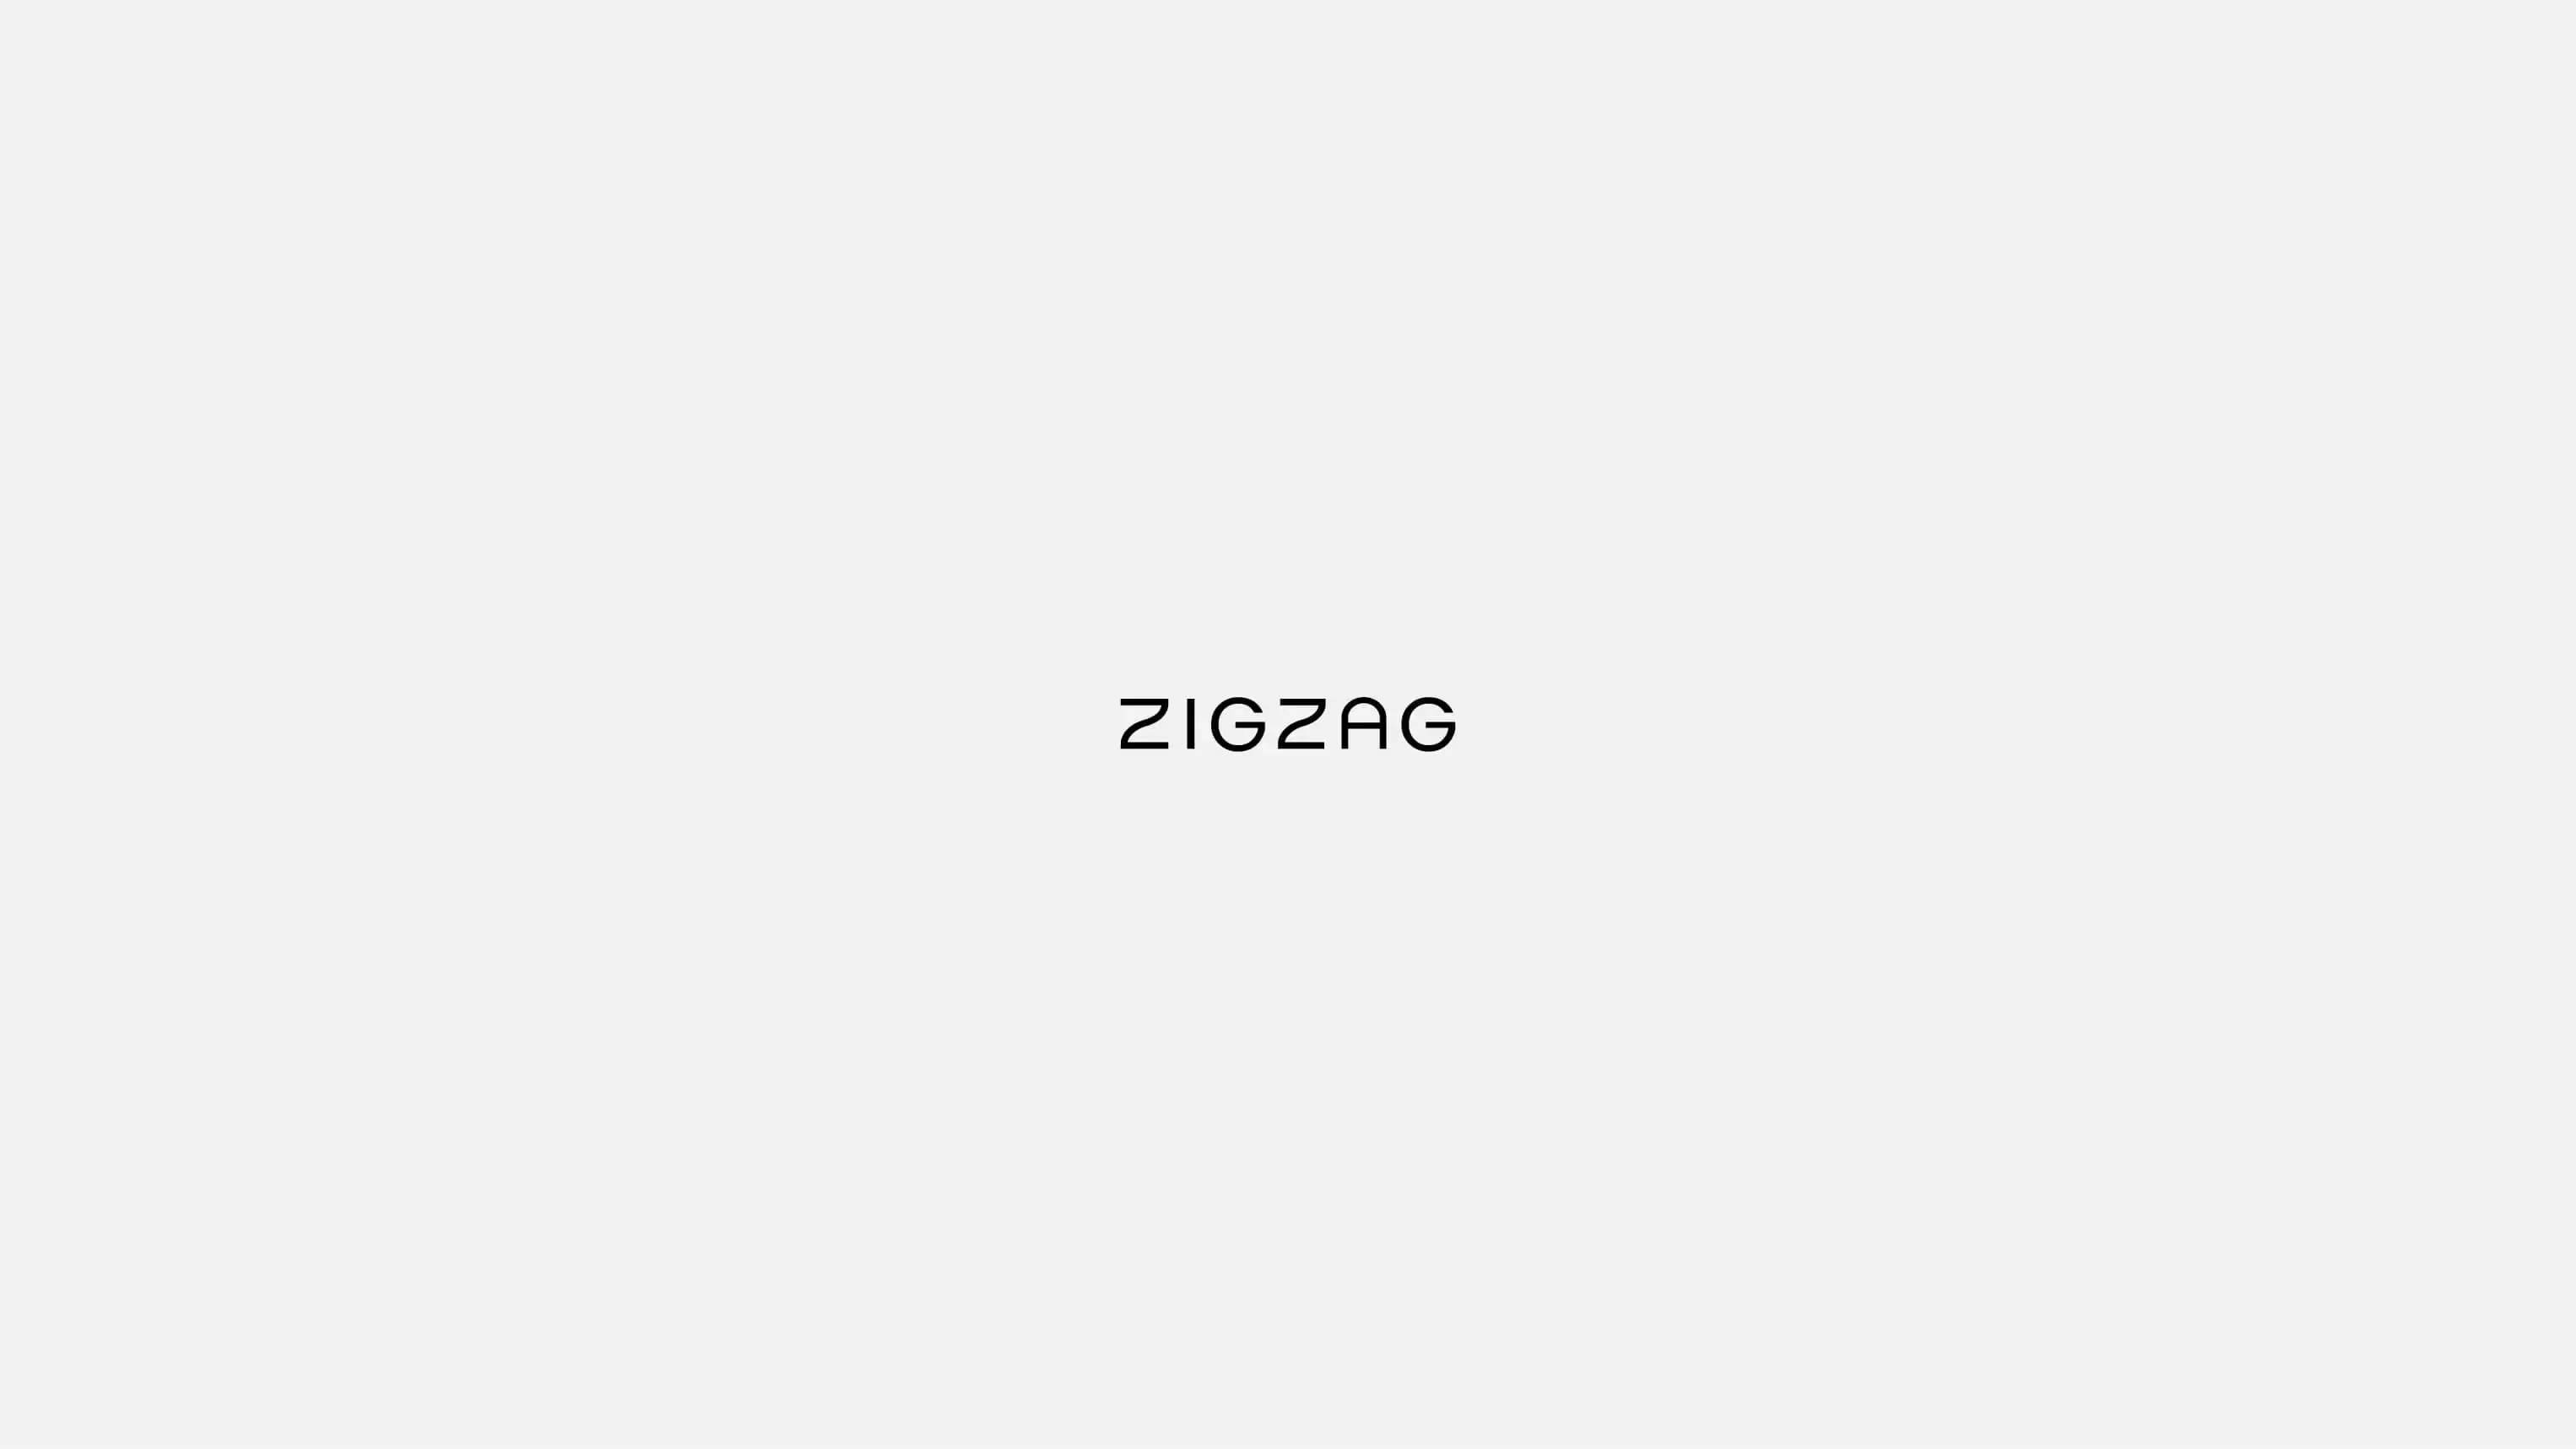 ZigZag's logotype